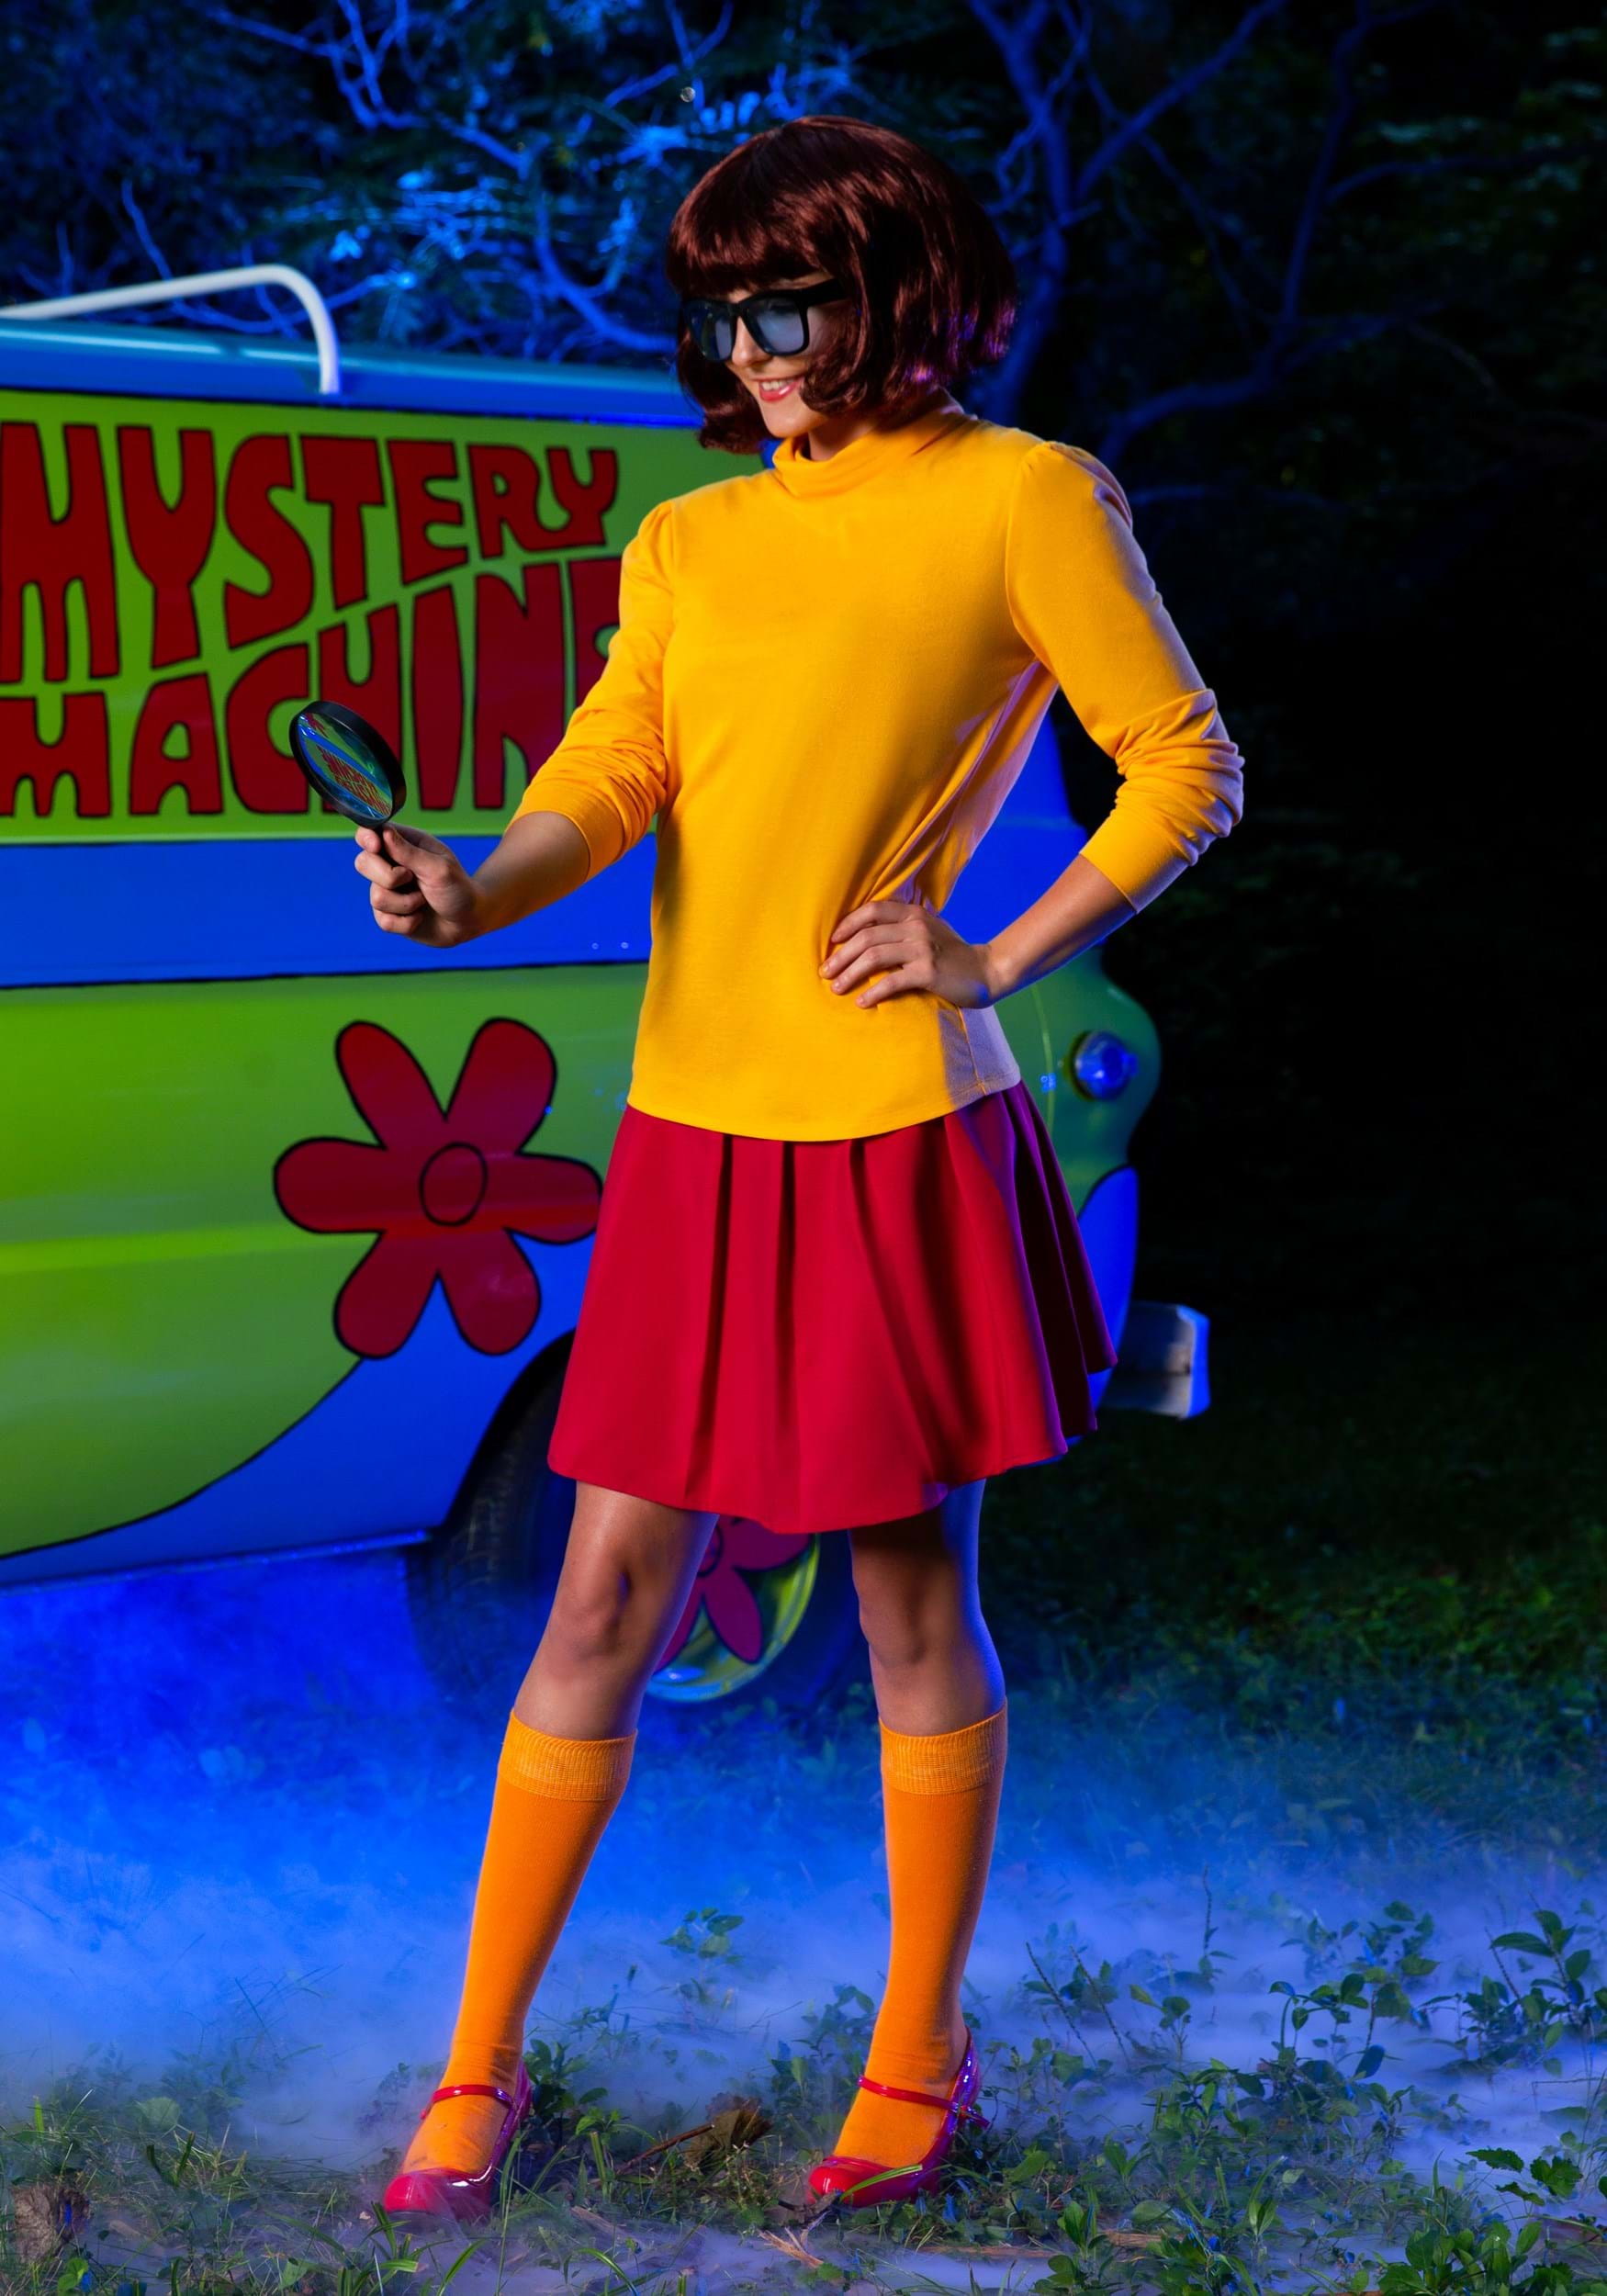 Scooby Doo Velma Dinkley Costume